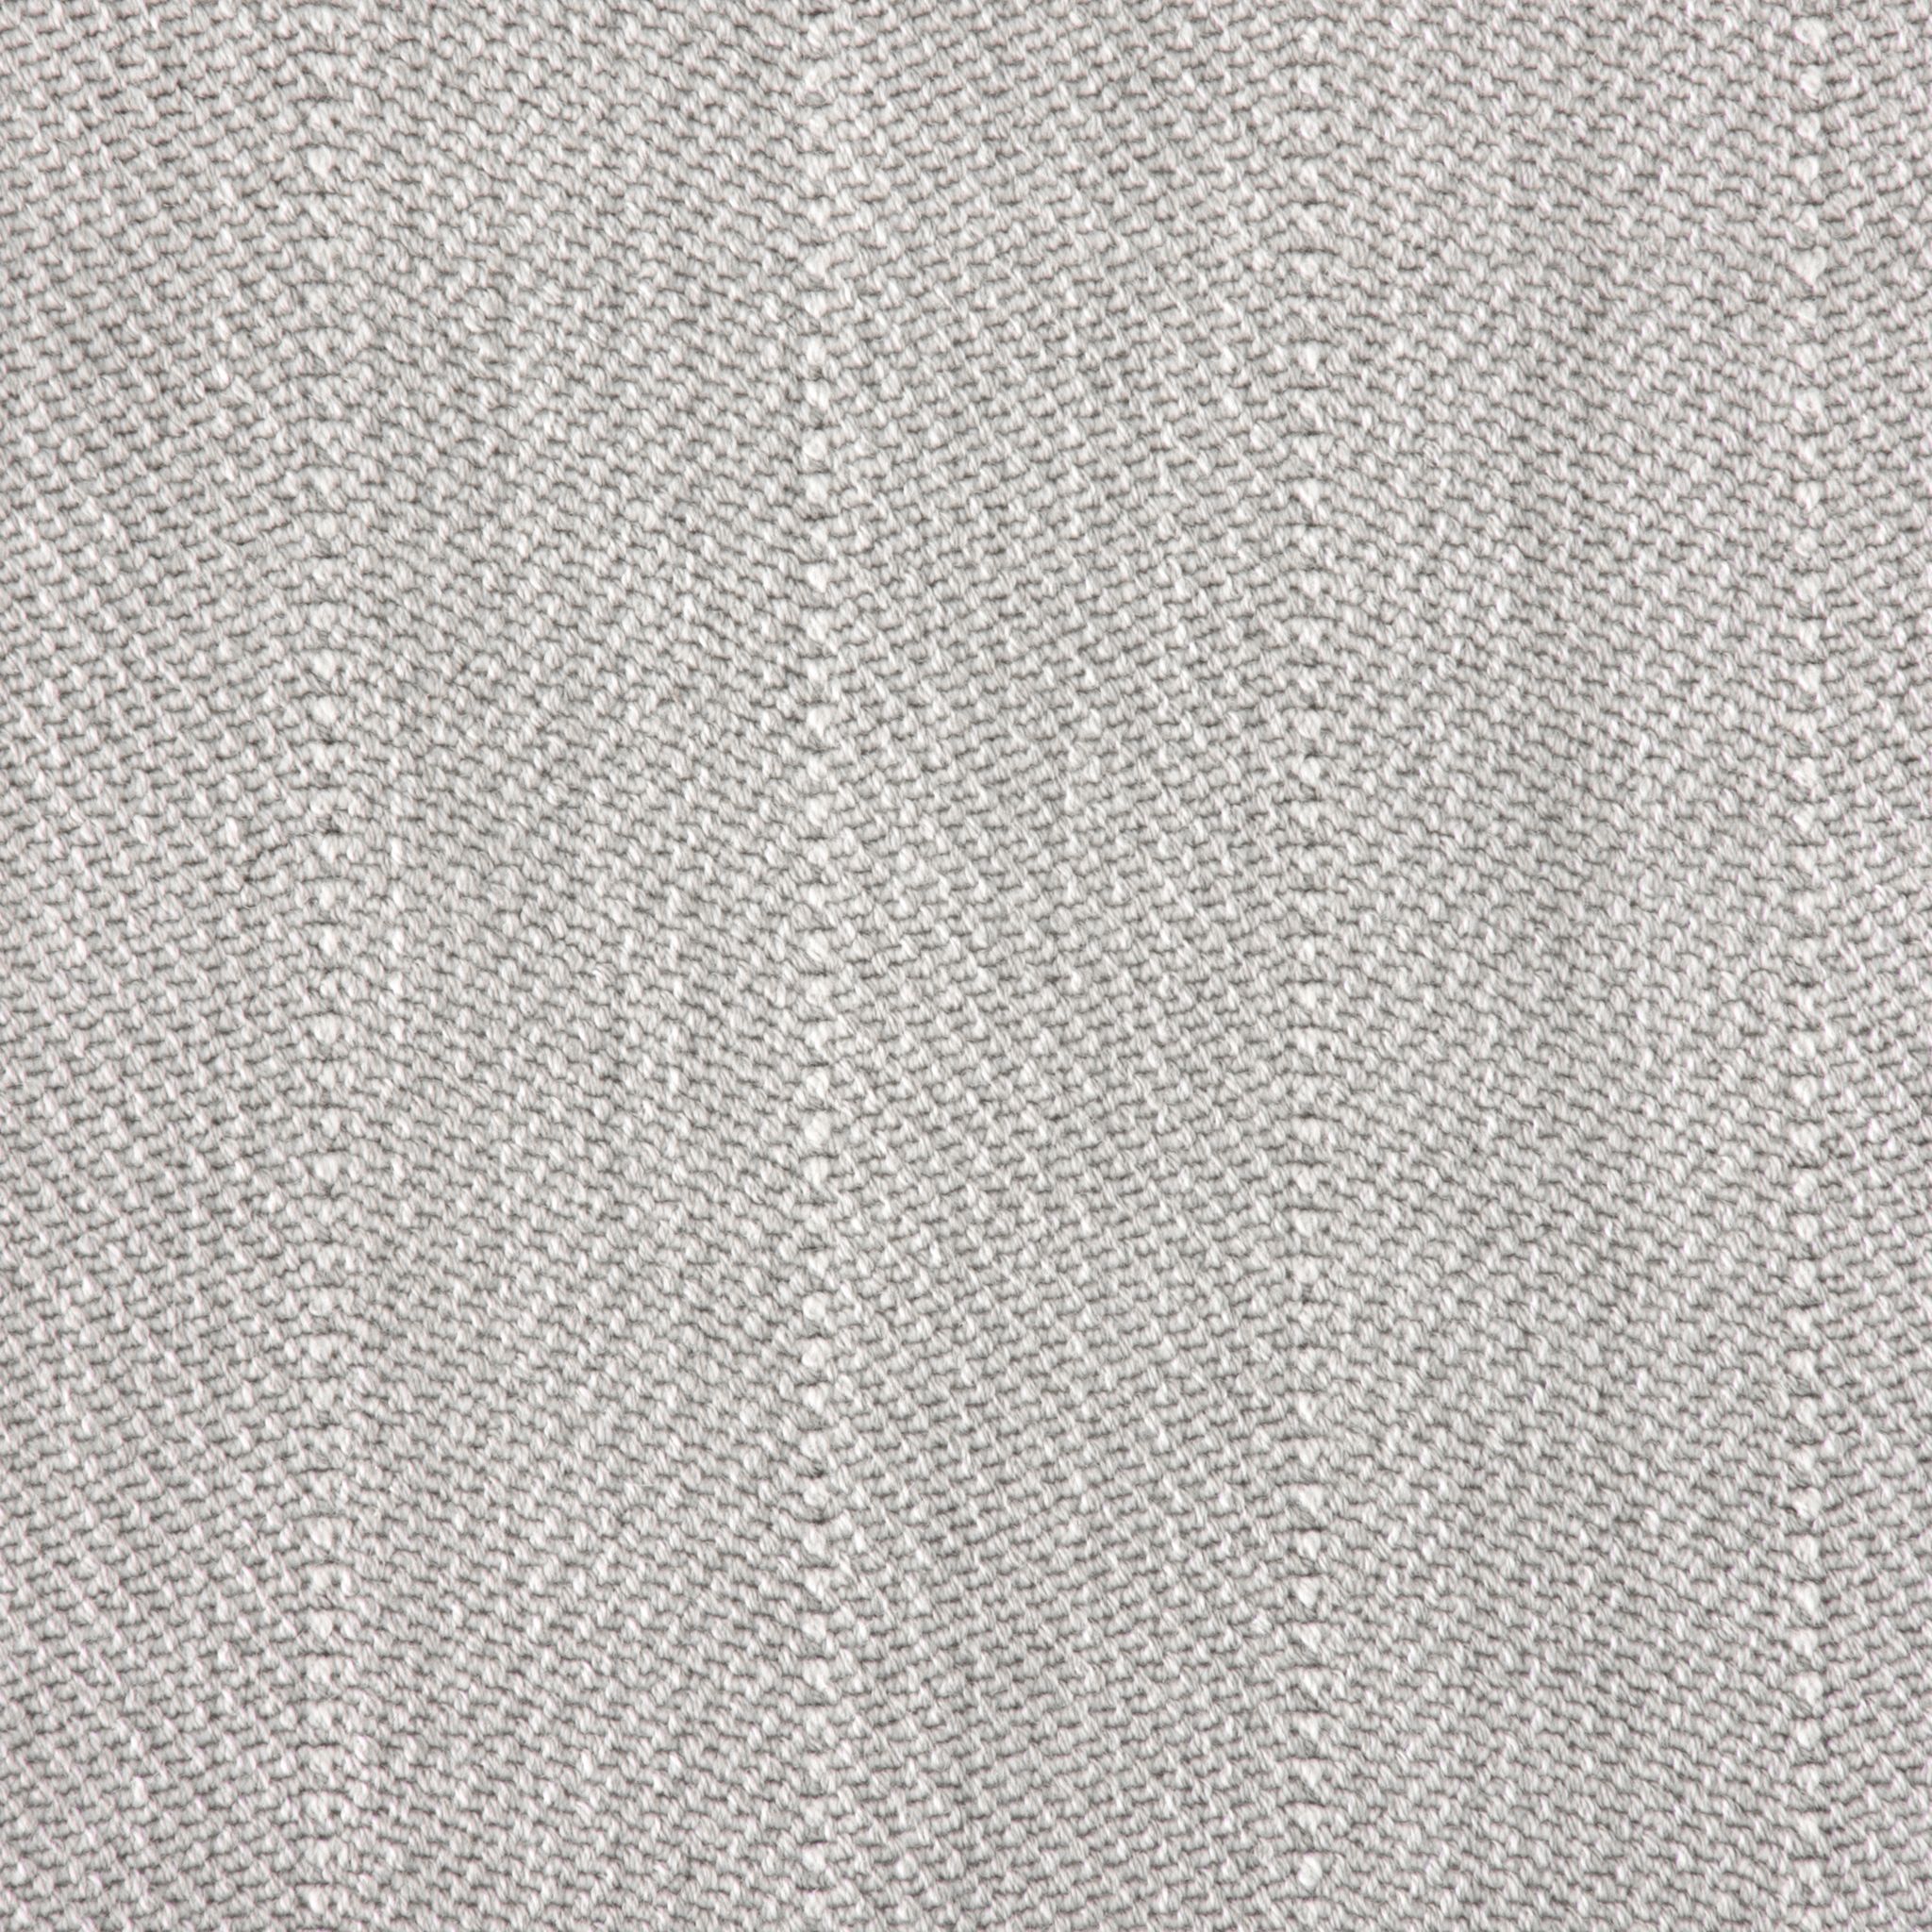 Treemont Stria Wilton Carpet, Linen Default Title